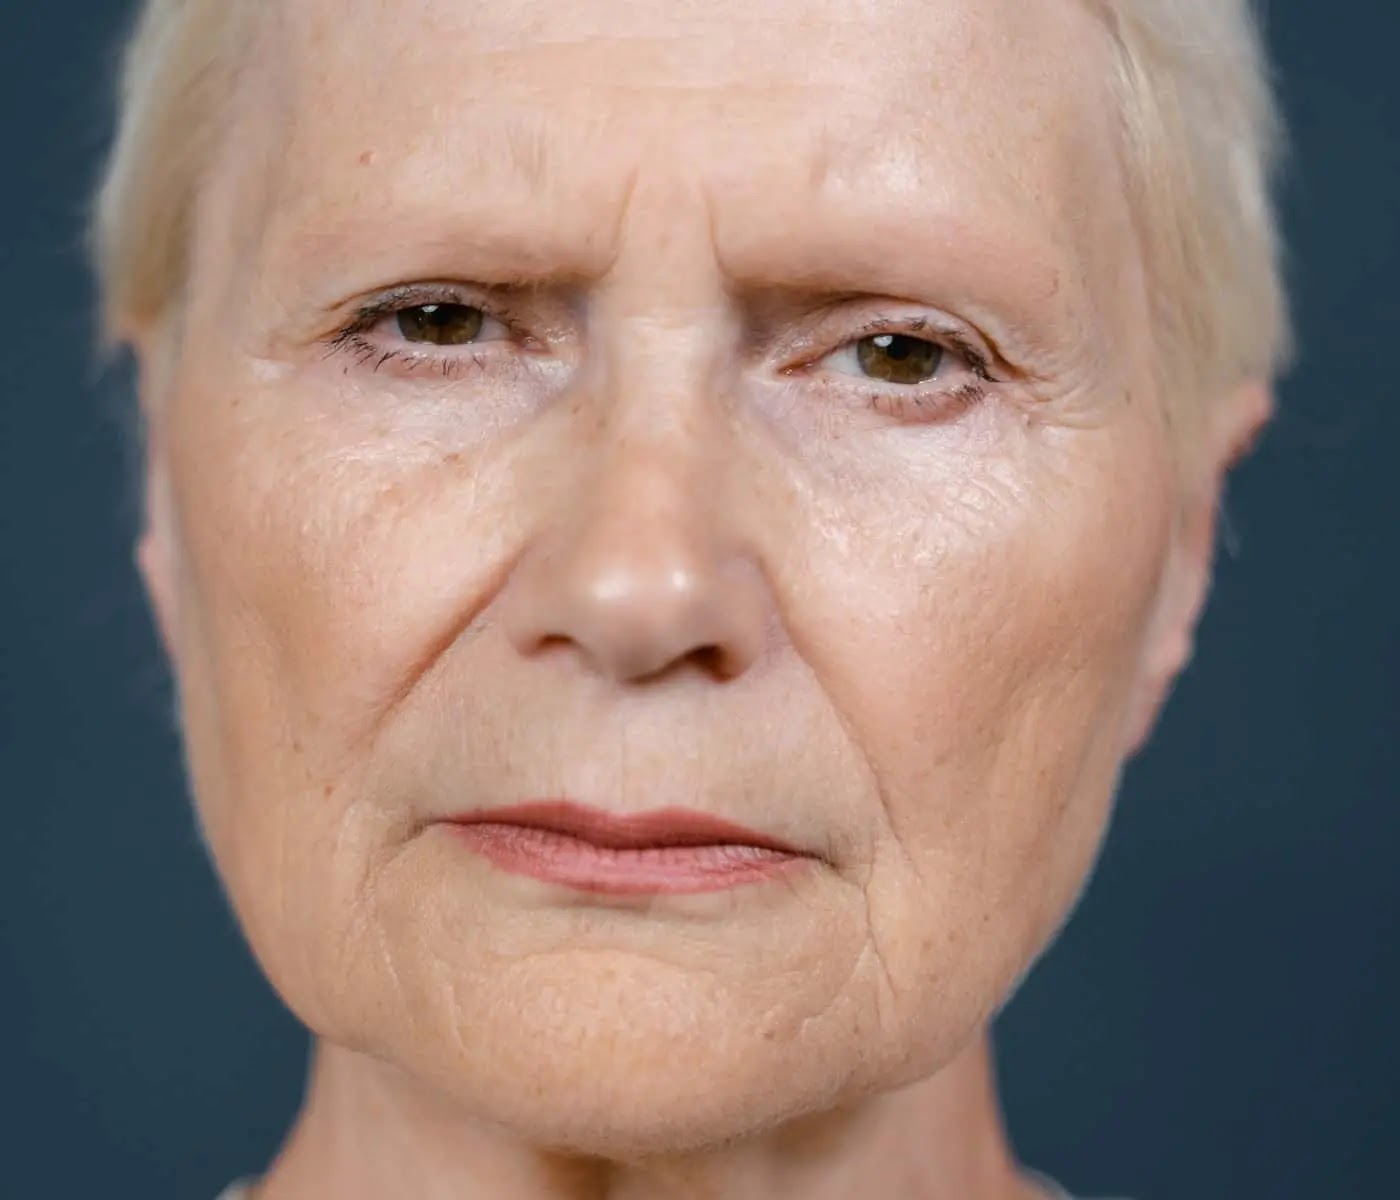 10 Secret ways to get rid of wrinkles